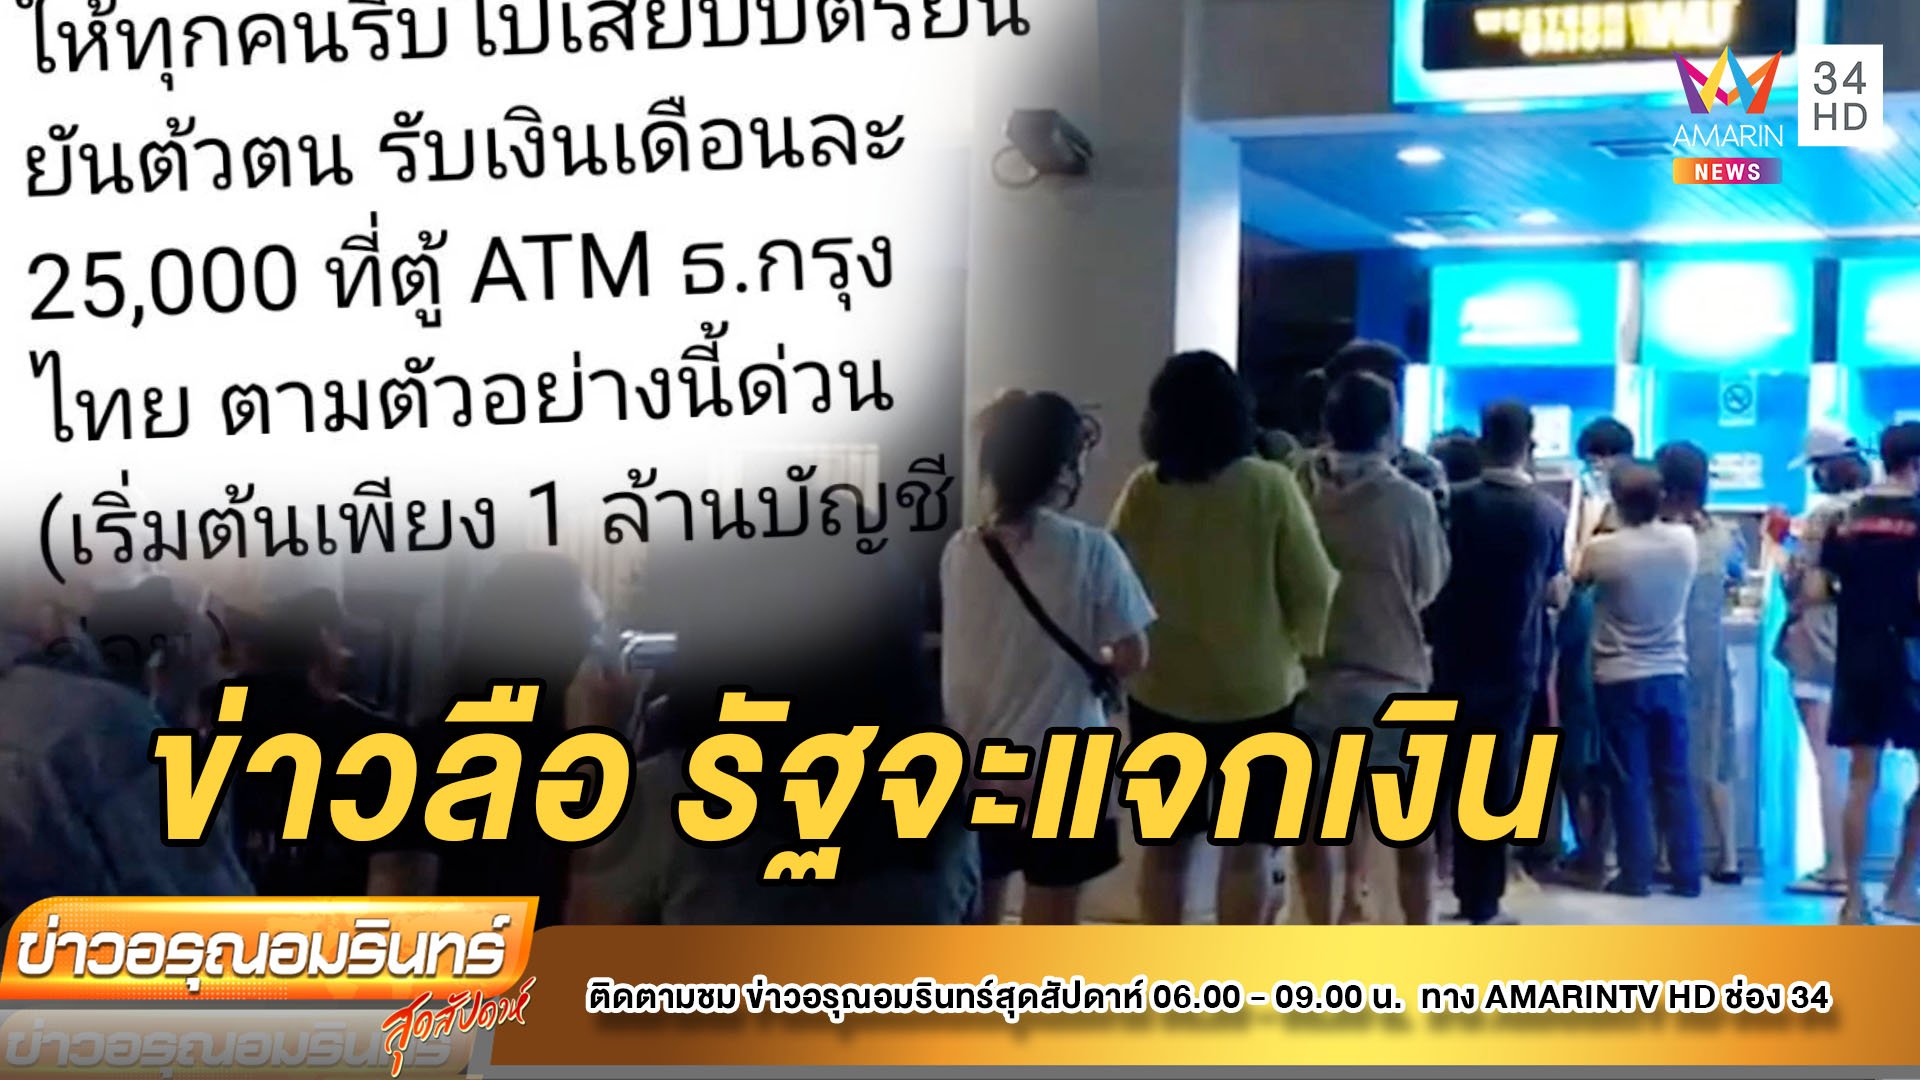 แห่มาแน่น! ชาวบ้านเชื่อข่าวลือรัฐแจกเงิน โร่บุกธนาคารเพียบ  | ข่าวอรุณอมรินทร์ | 15 ส.ค. 64 | AMARIN TVHD34